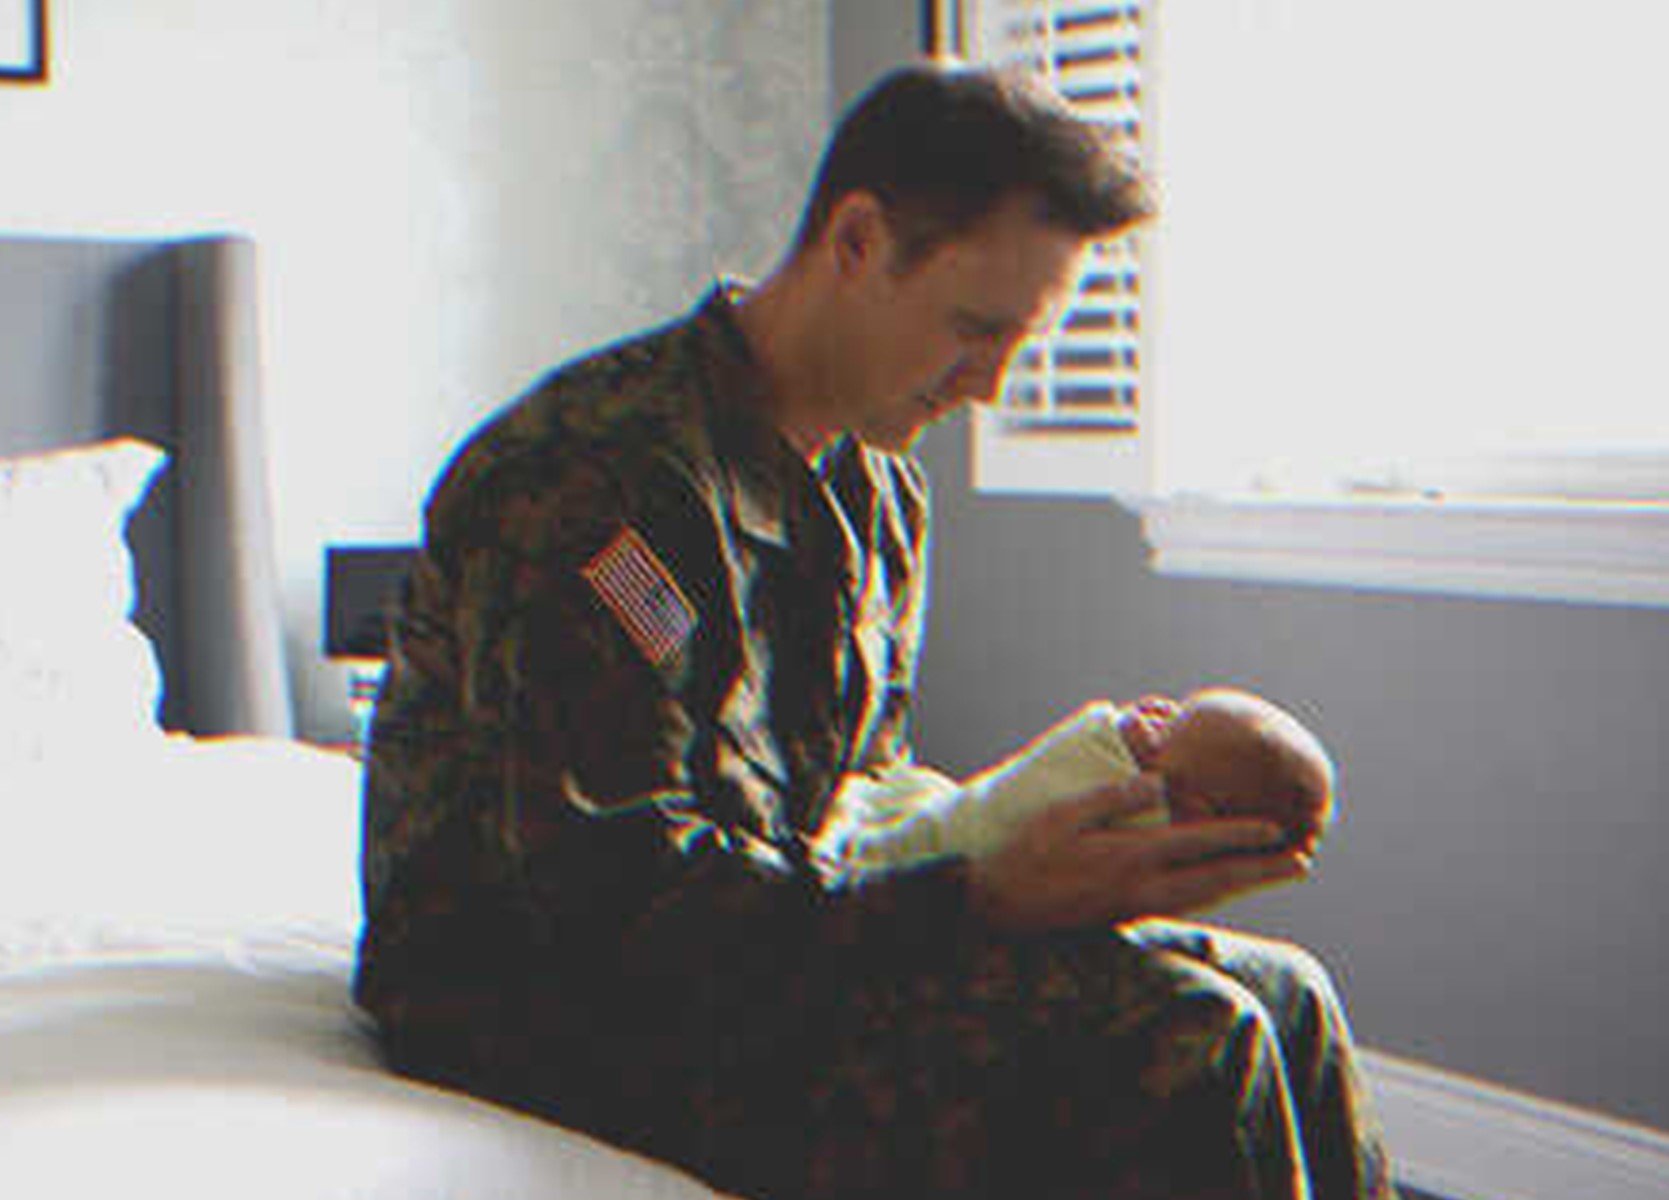 Adam held the tiny baby in his hands. | Source: Shutterstock.com